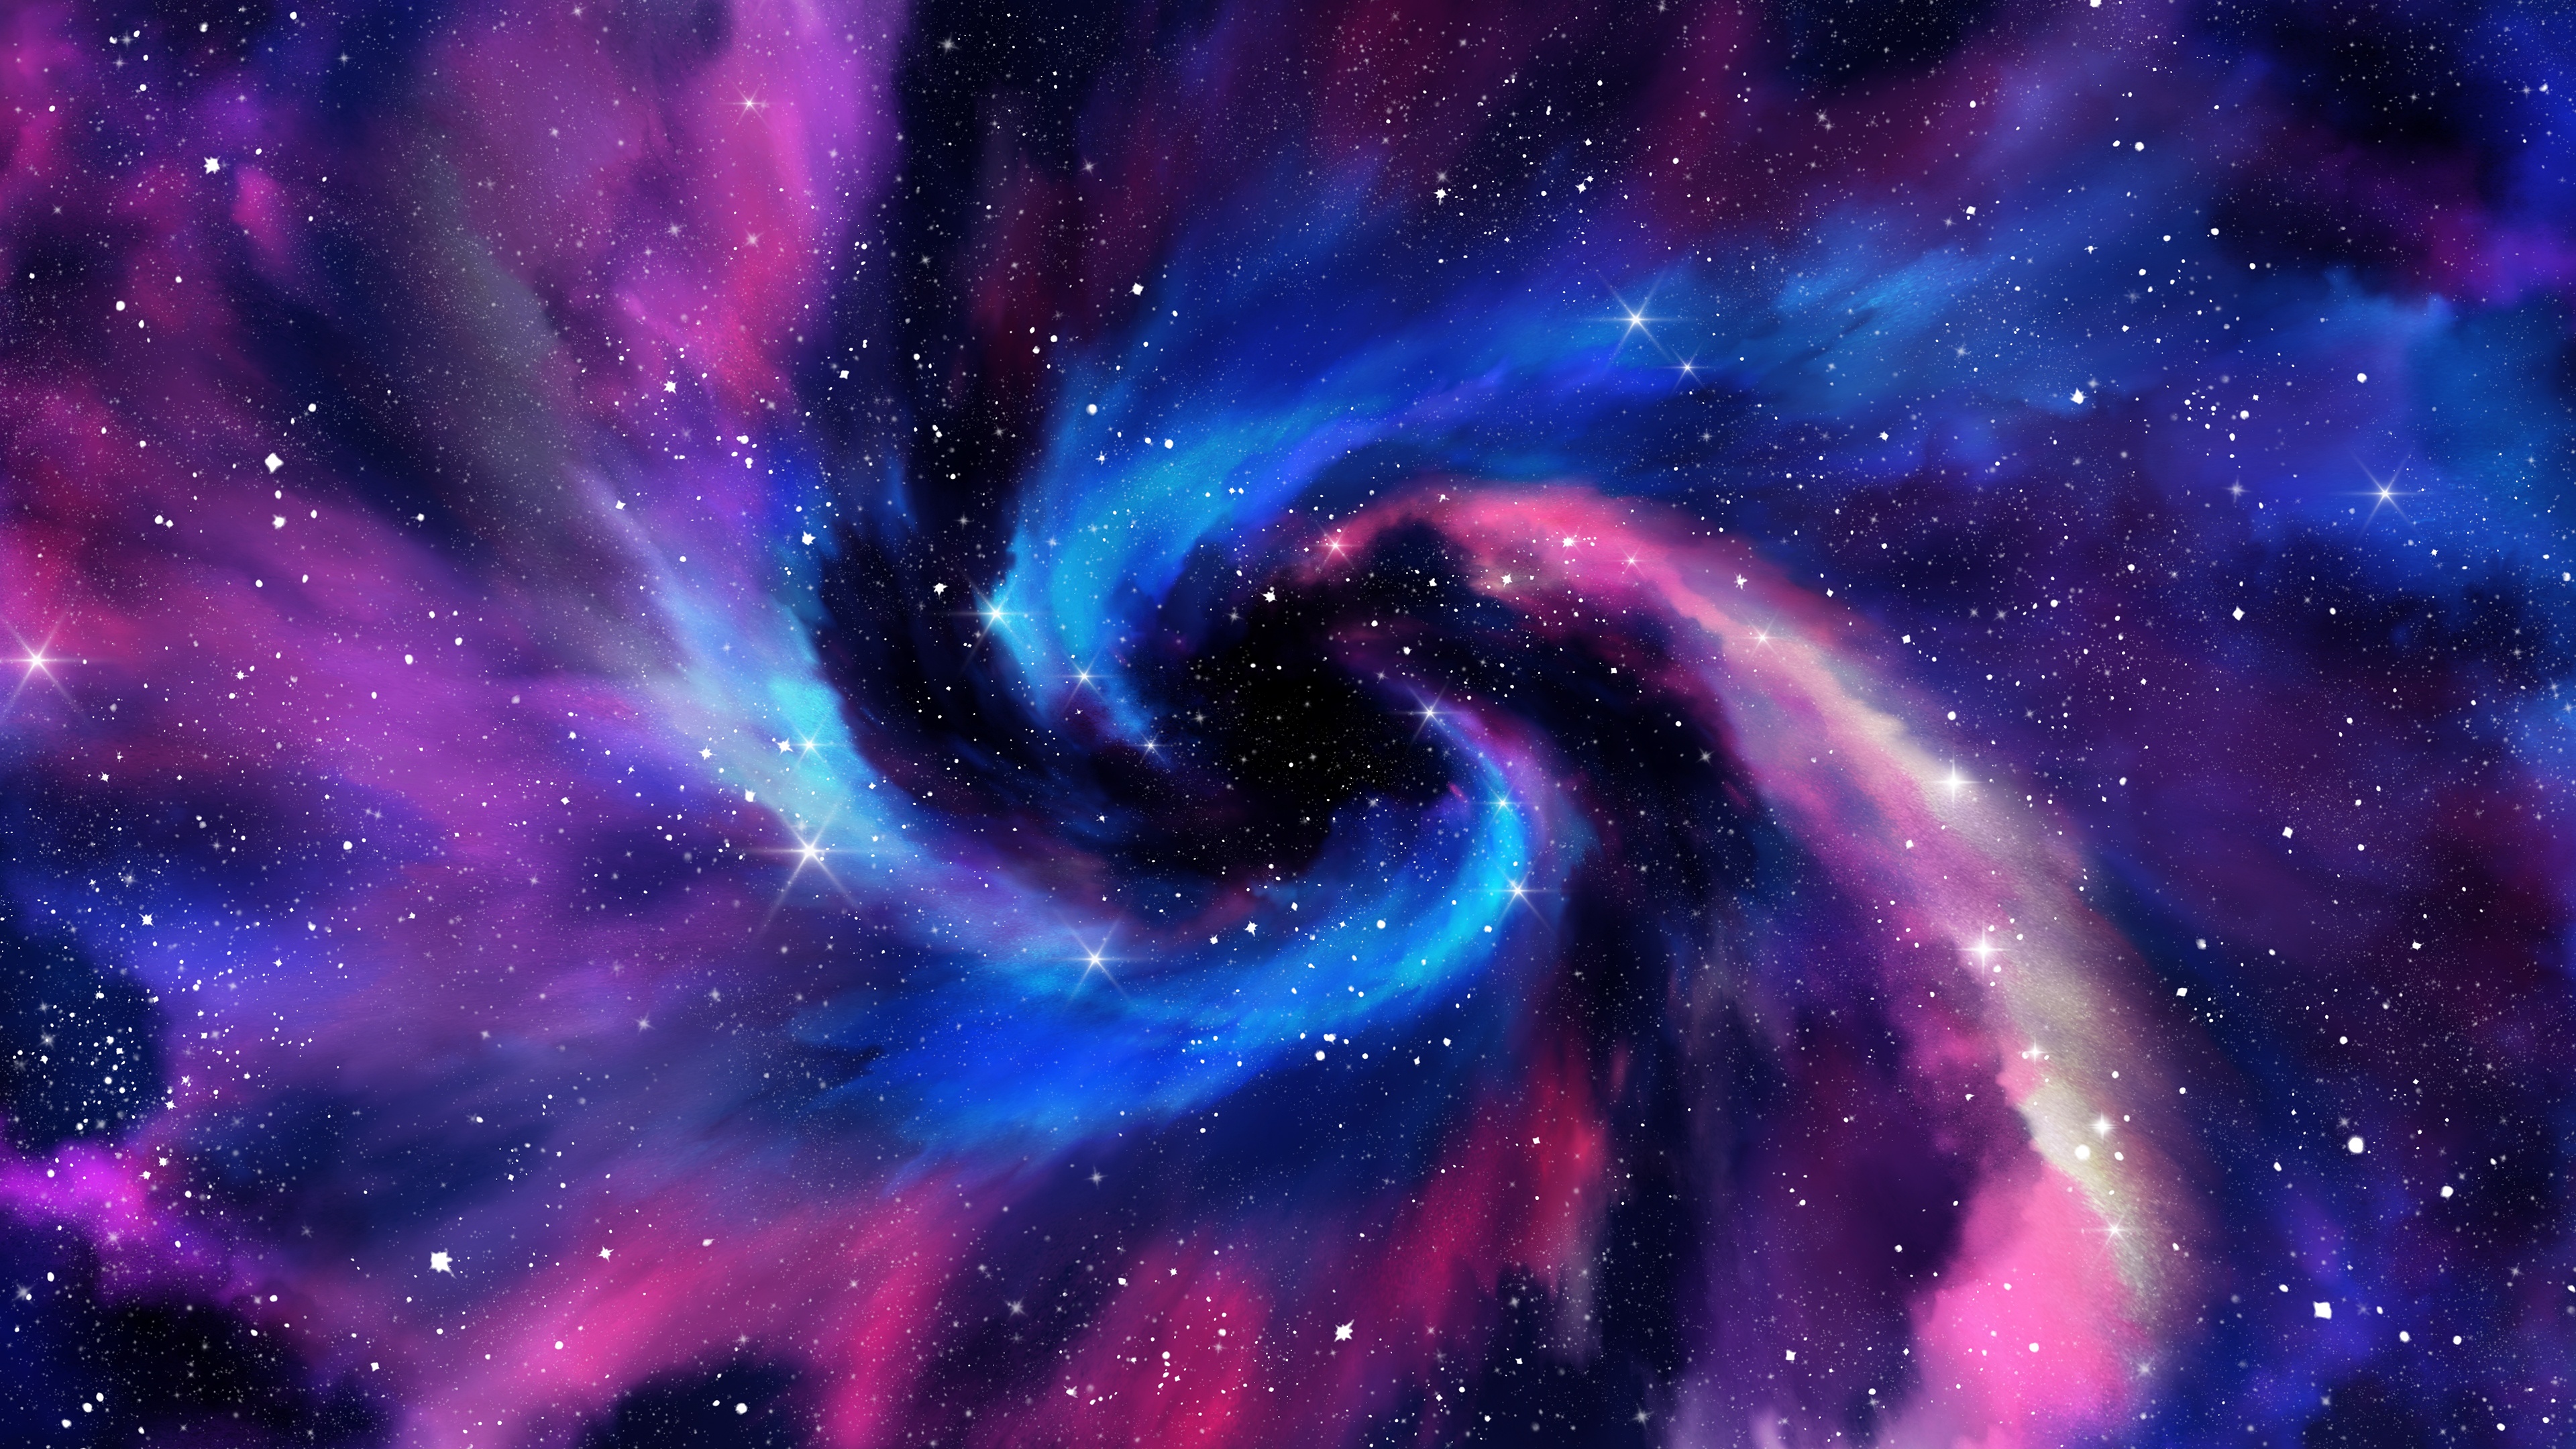 170 Galaxy / Clouds Wallpaper ideas | wallpaper, galaxy wallpaper, cloud  wallpaper